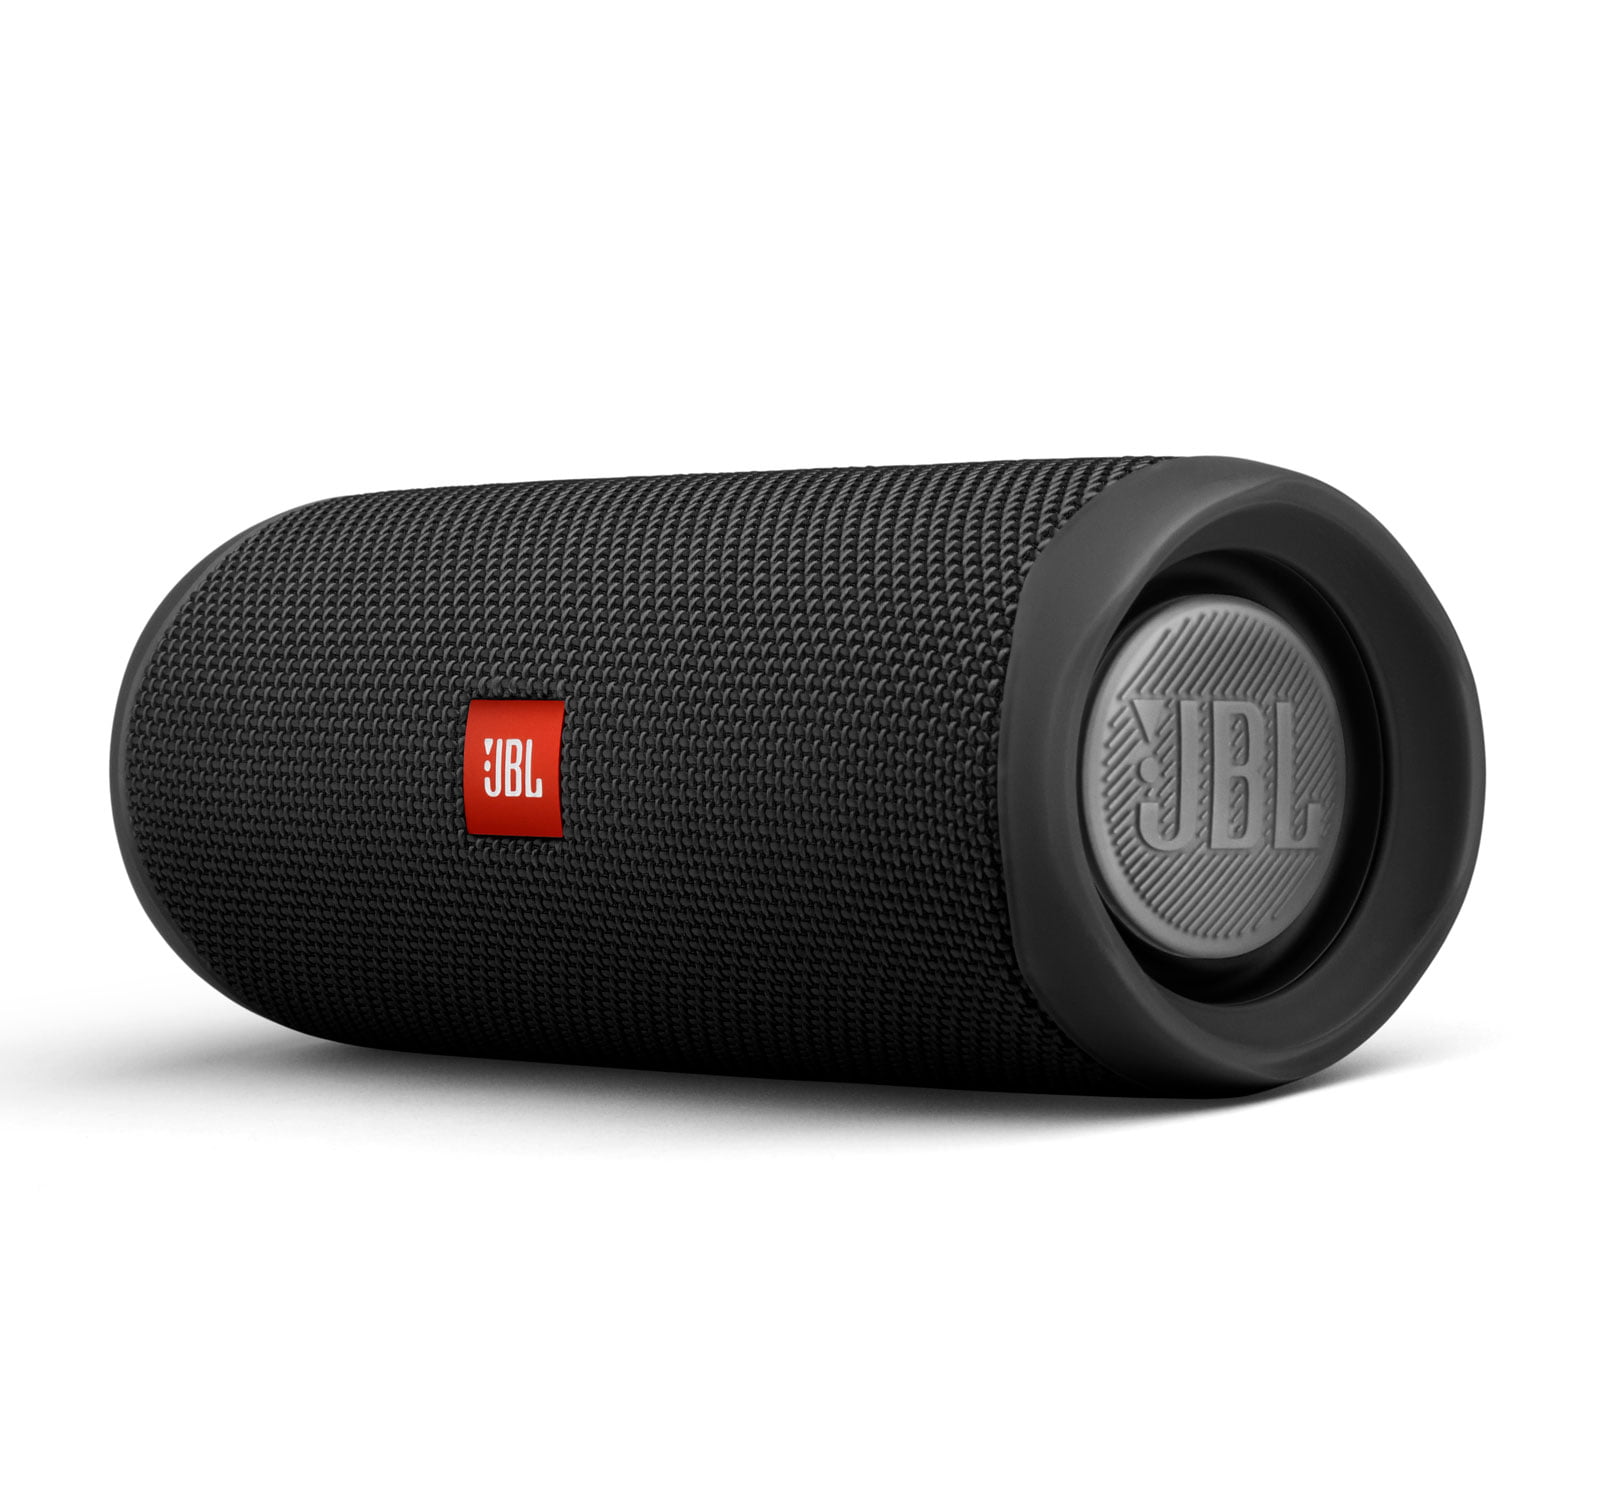 JBL Portable Bluetooth Speaker Pair with Waterproof, Black, JBLFLIP5BLKAM-PR - image 5 of 7